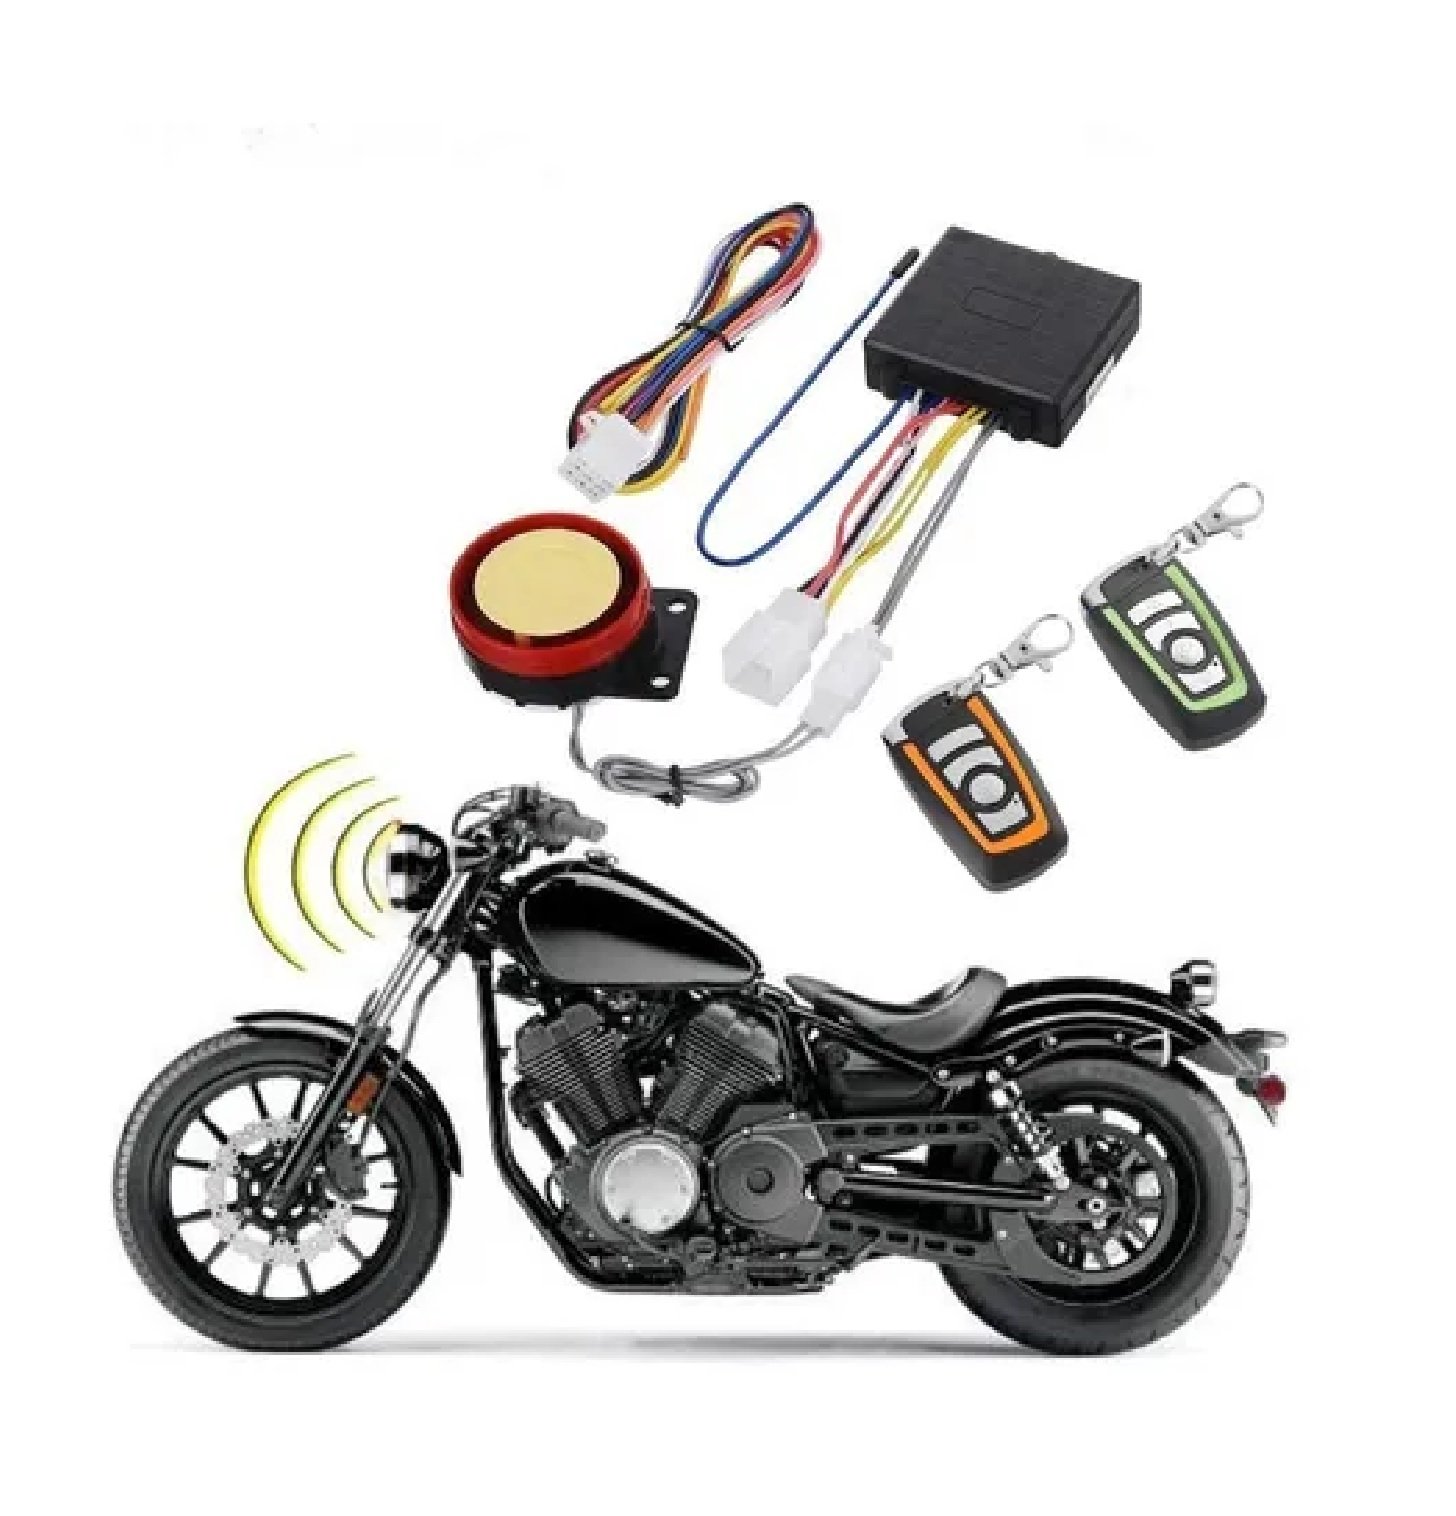  Pupilash Sistema de alarma de coche - Alarma de motocicleta  105-125dB motocicleta Control remoto alarma cuerno sistema de seguridad  antirrobo : Automotriz